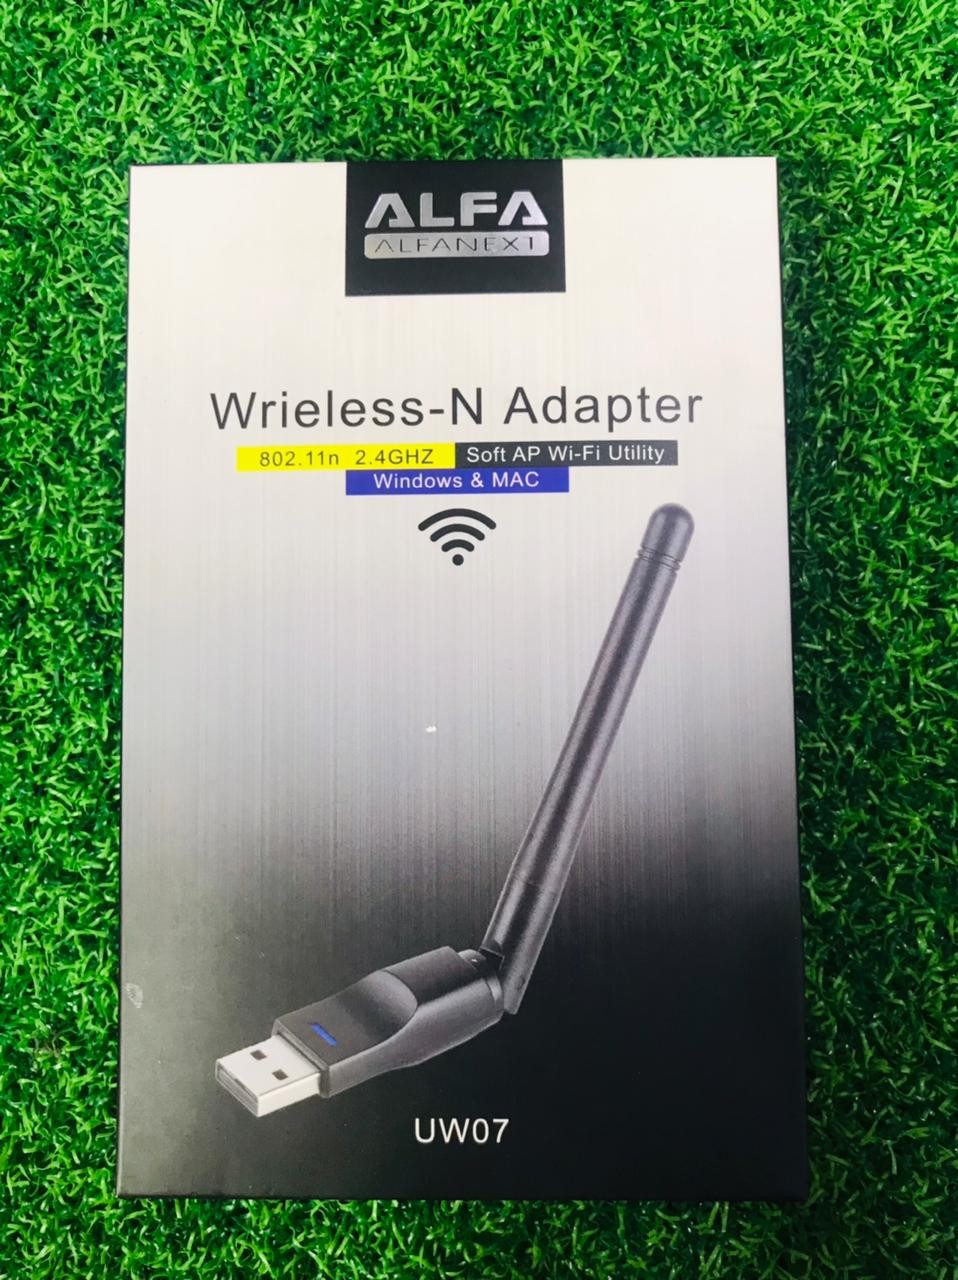 Wireless N Adapter